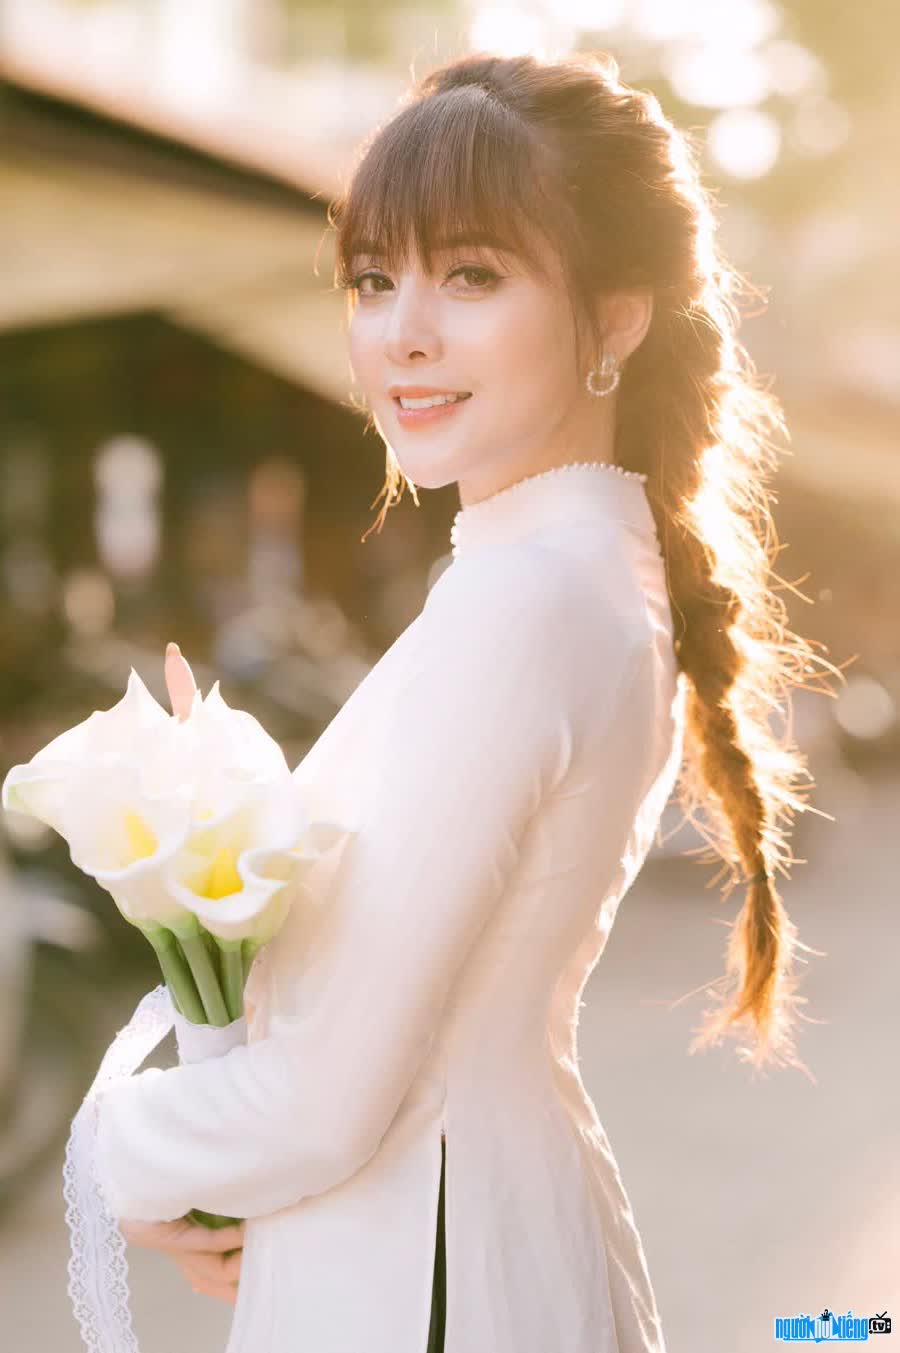 Hình ảnh diễn viên Trần Thu đẹp tinh khôi khi diện áo dài trắng